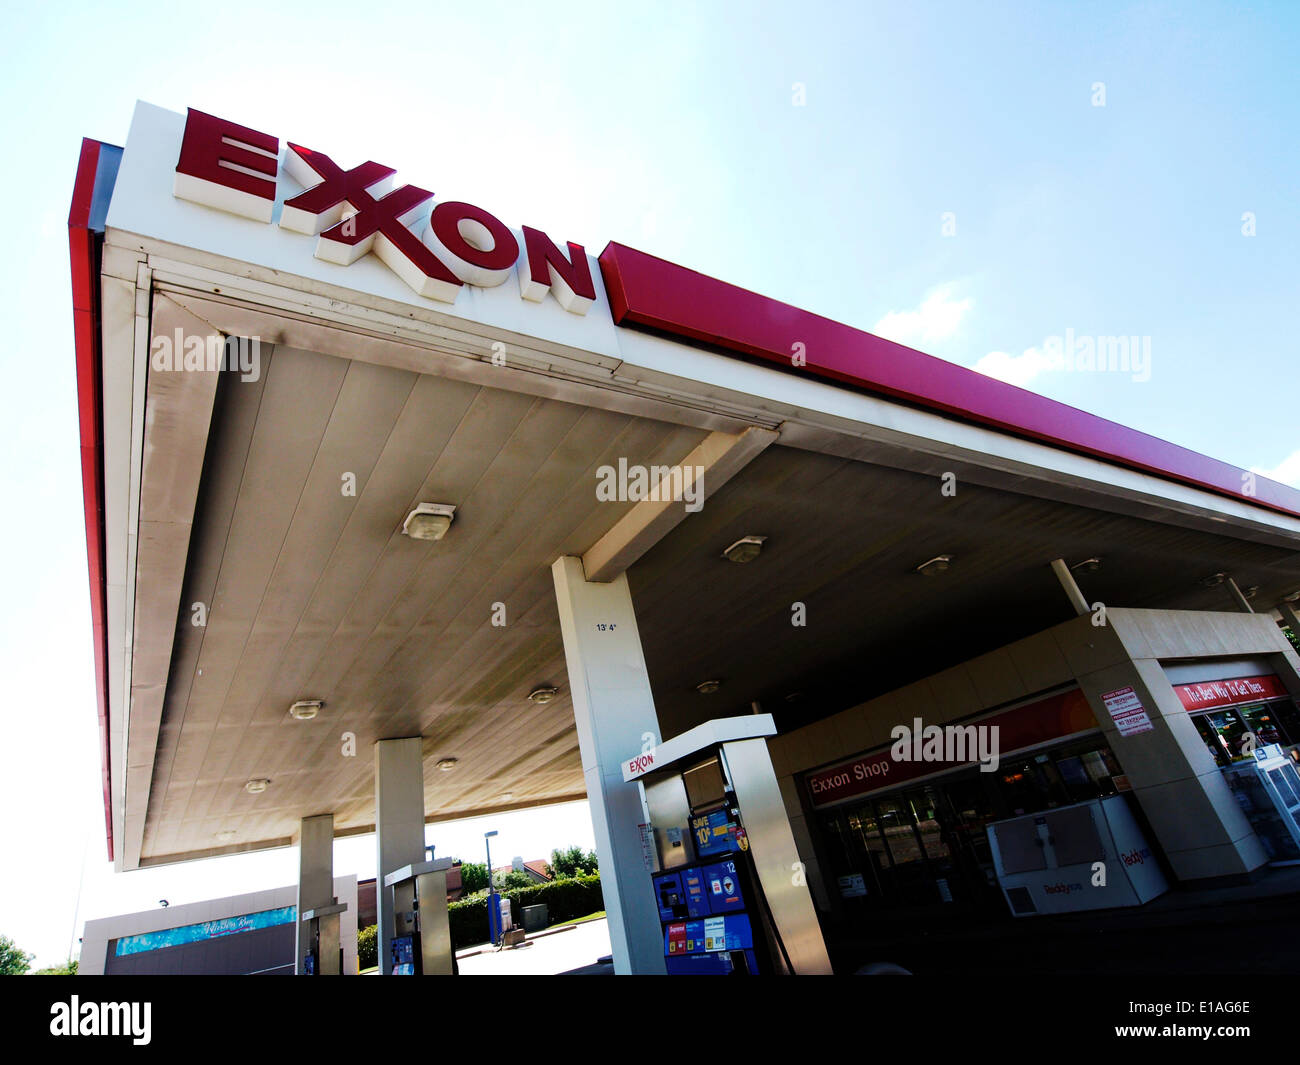 Irving, Texas - 28 mai 2014 - Plus grande société United States, Exxon Mobil dans le Las Colinas Irving en développement a encore un poste de remplissage d'Exxon qui seront démolis Crédit : J. G. Domke/Alamy Live News Banque D'Images